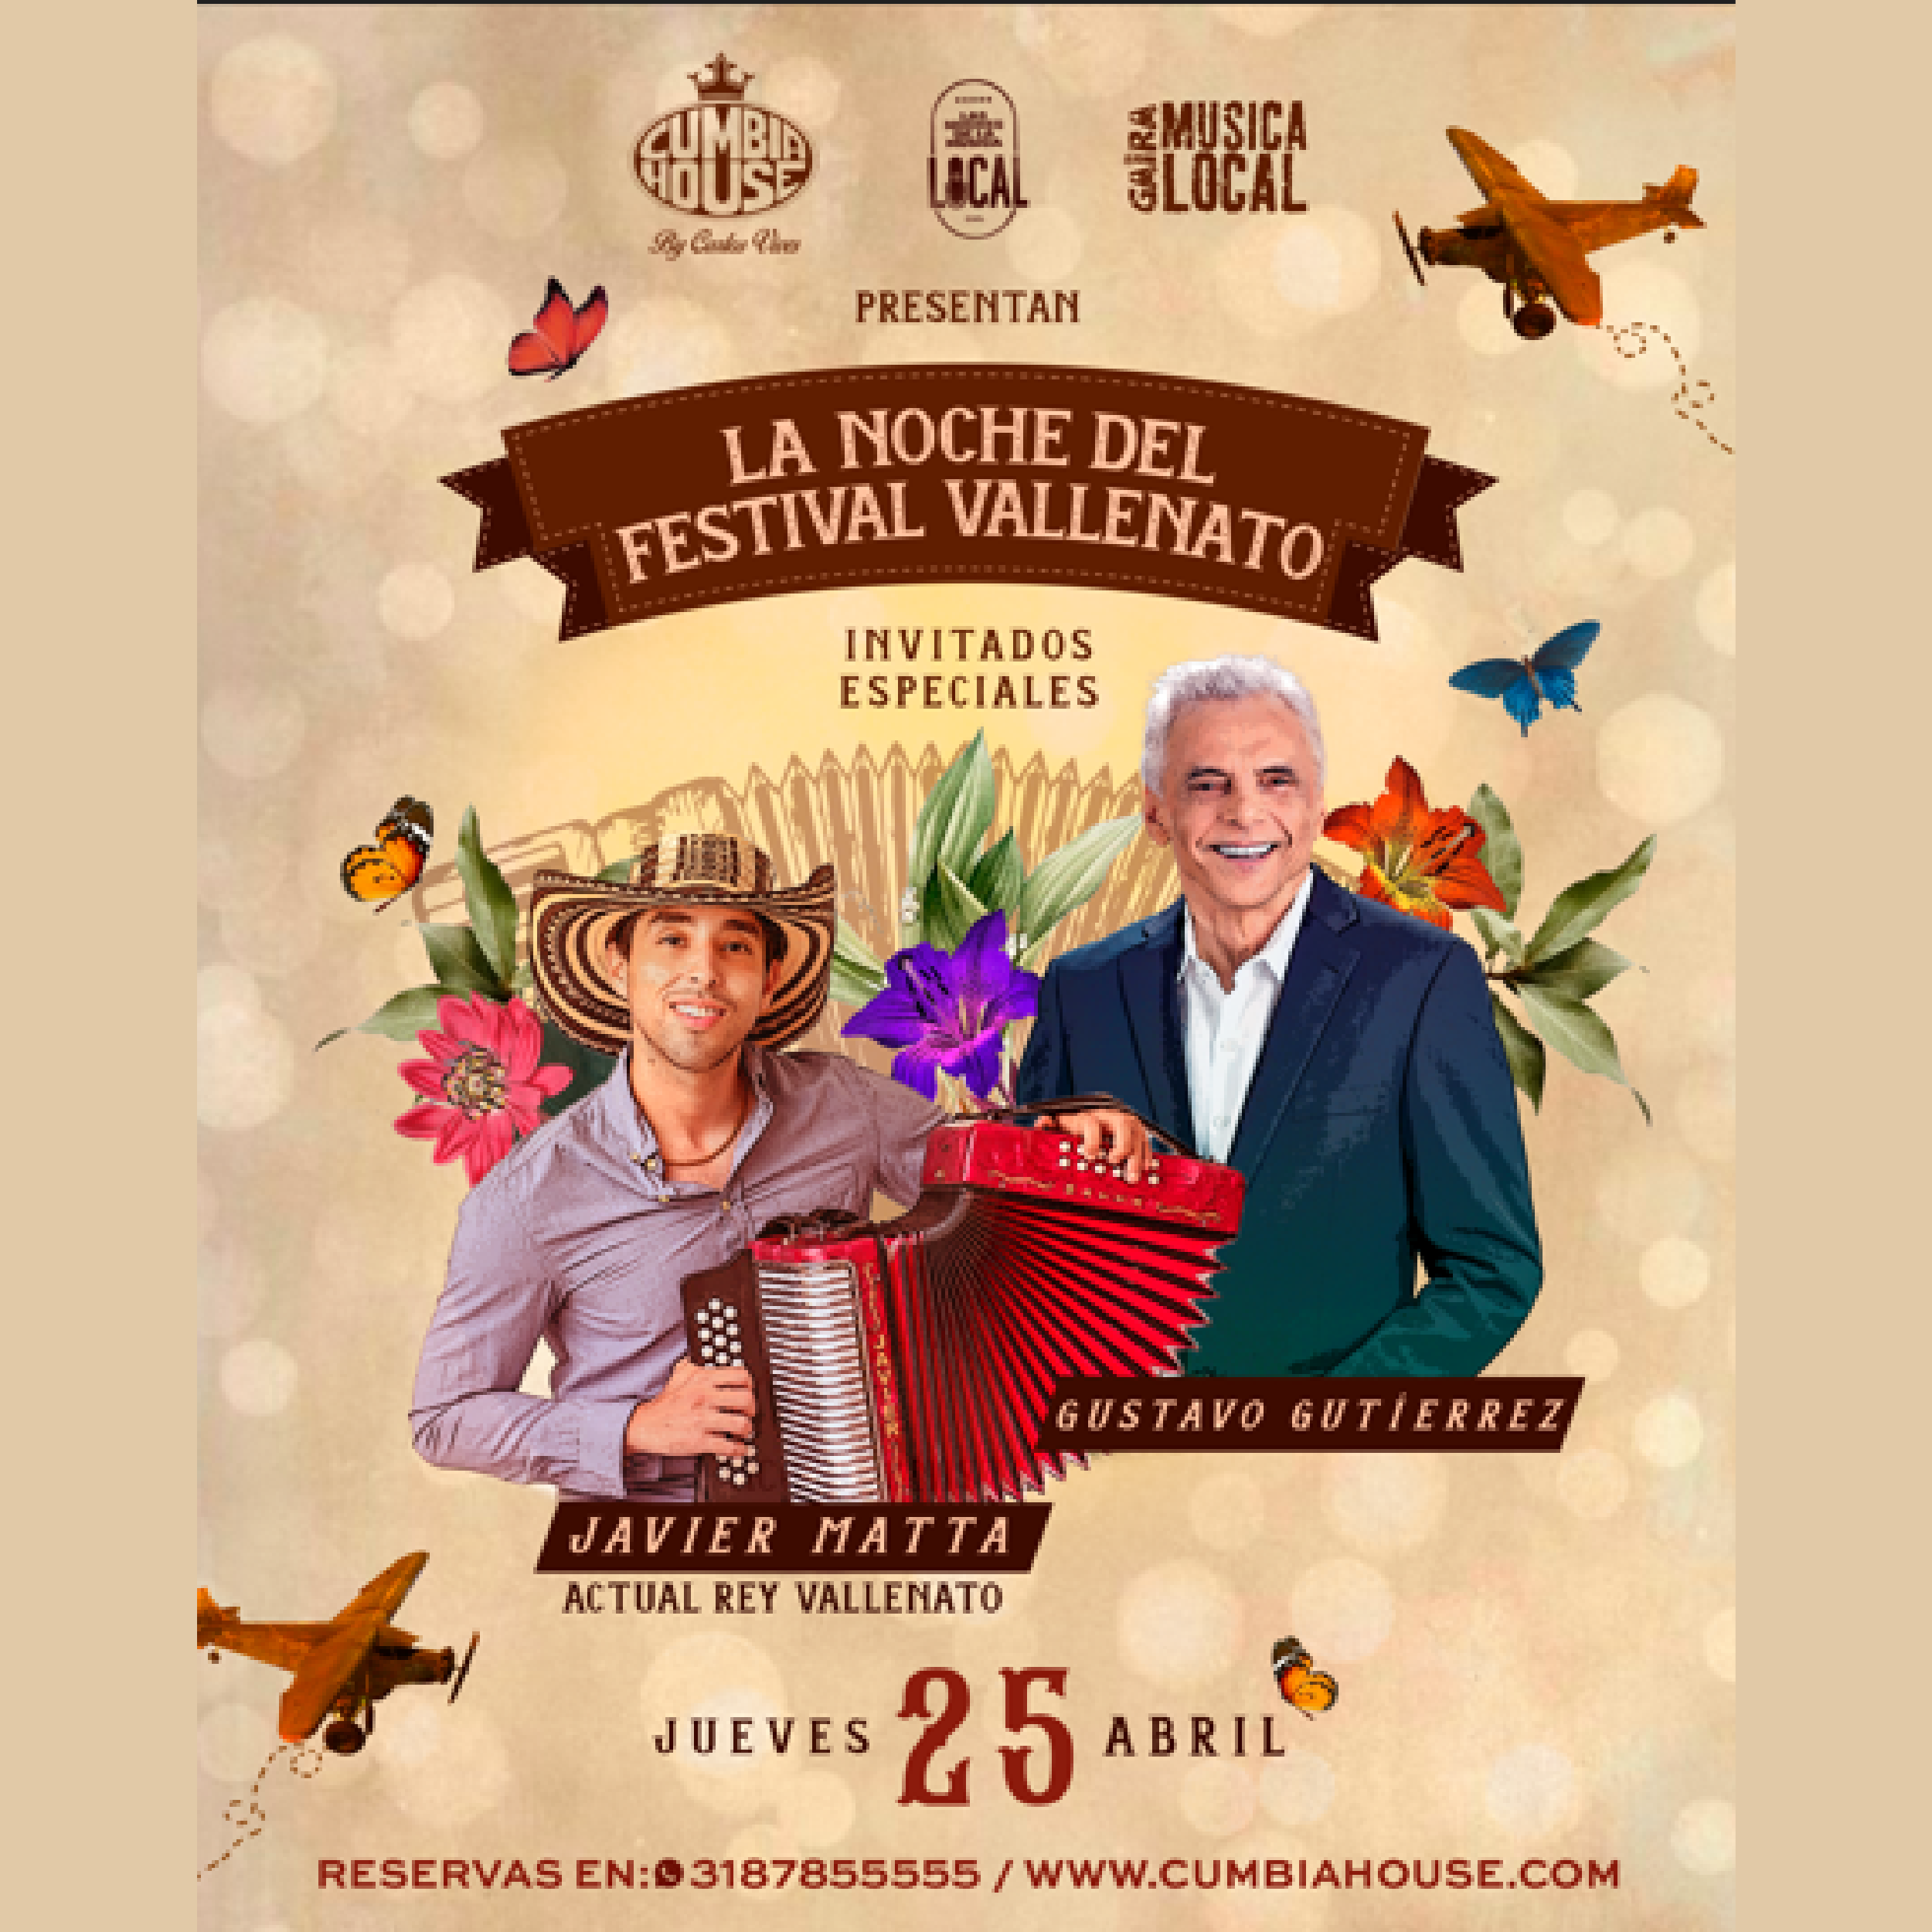 La Noche del Festival Vallenato Un Encuentro Único en Bogotá con Gustavo Gutiérrez y Javier Matta 